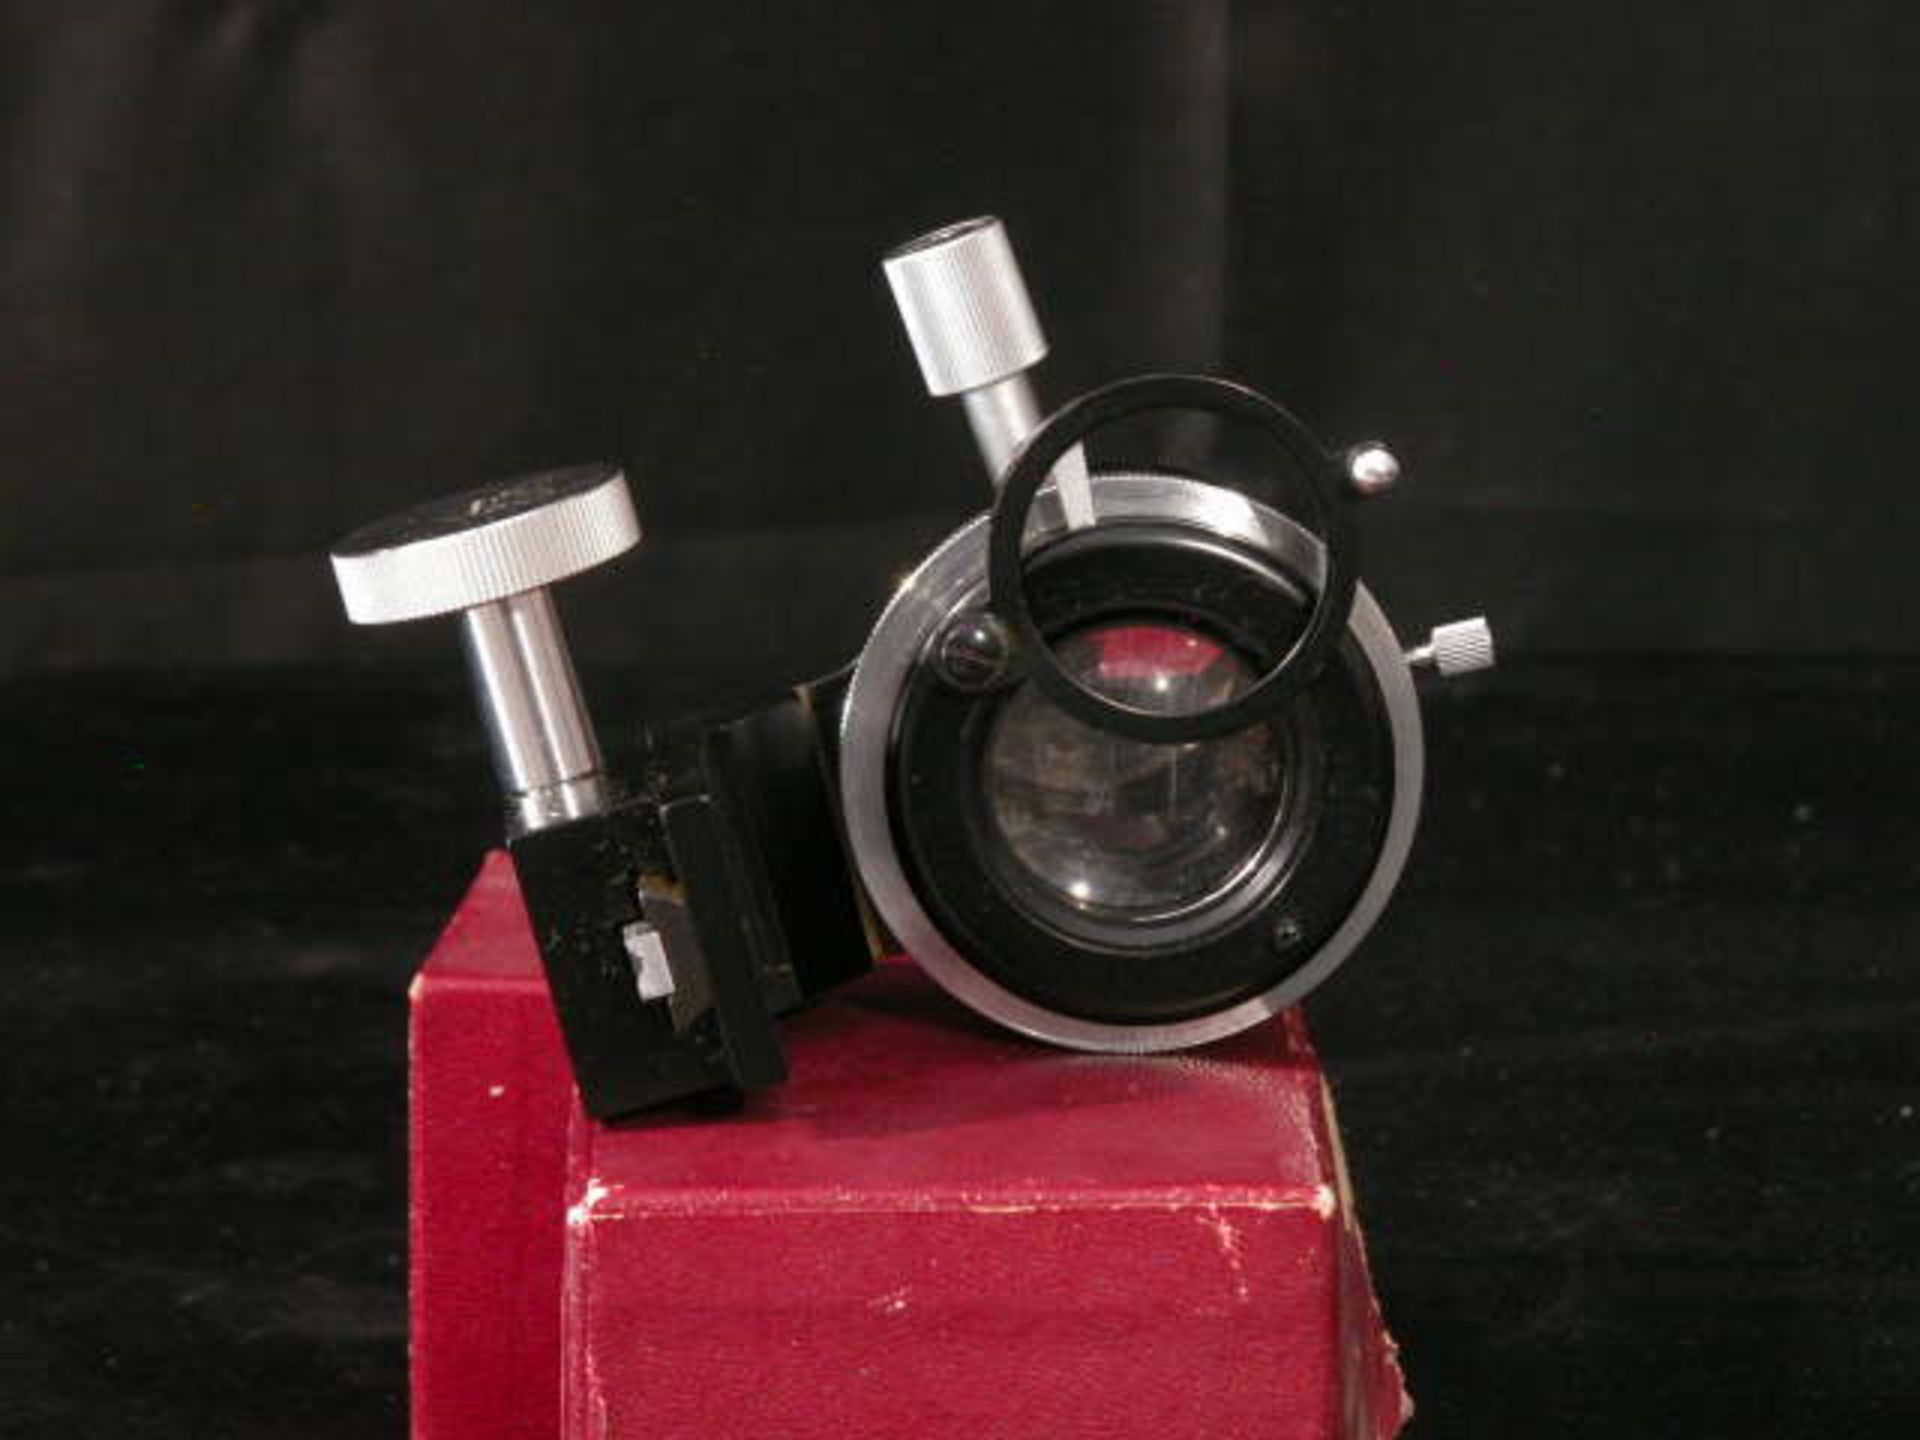 Ernst Leitz Wetzlar Low Power Microscope Condenser, Qty 1, 323410830997 - Image 8 of 8